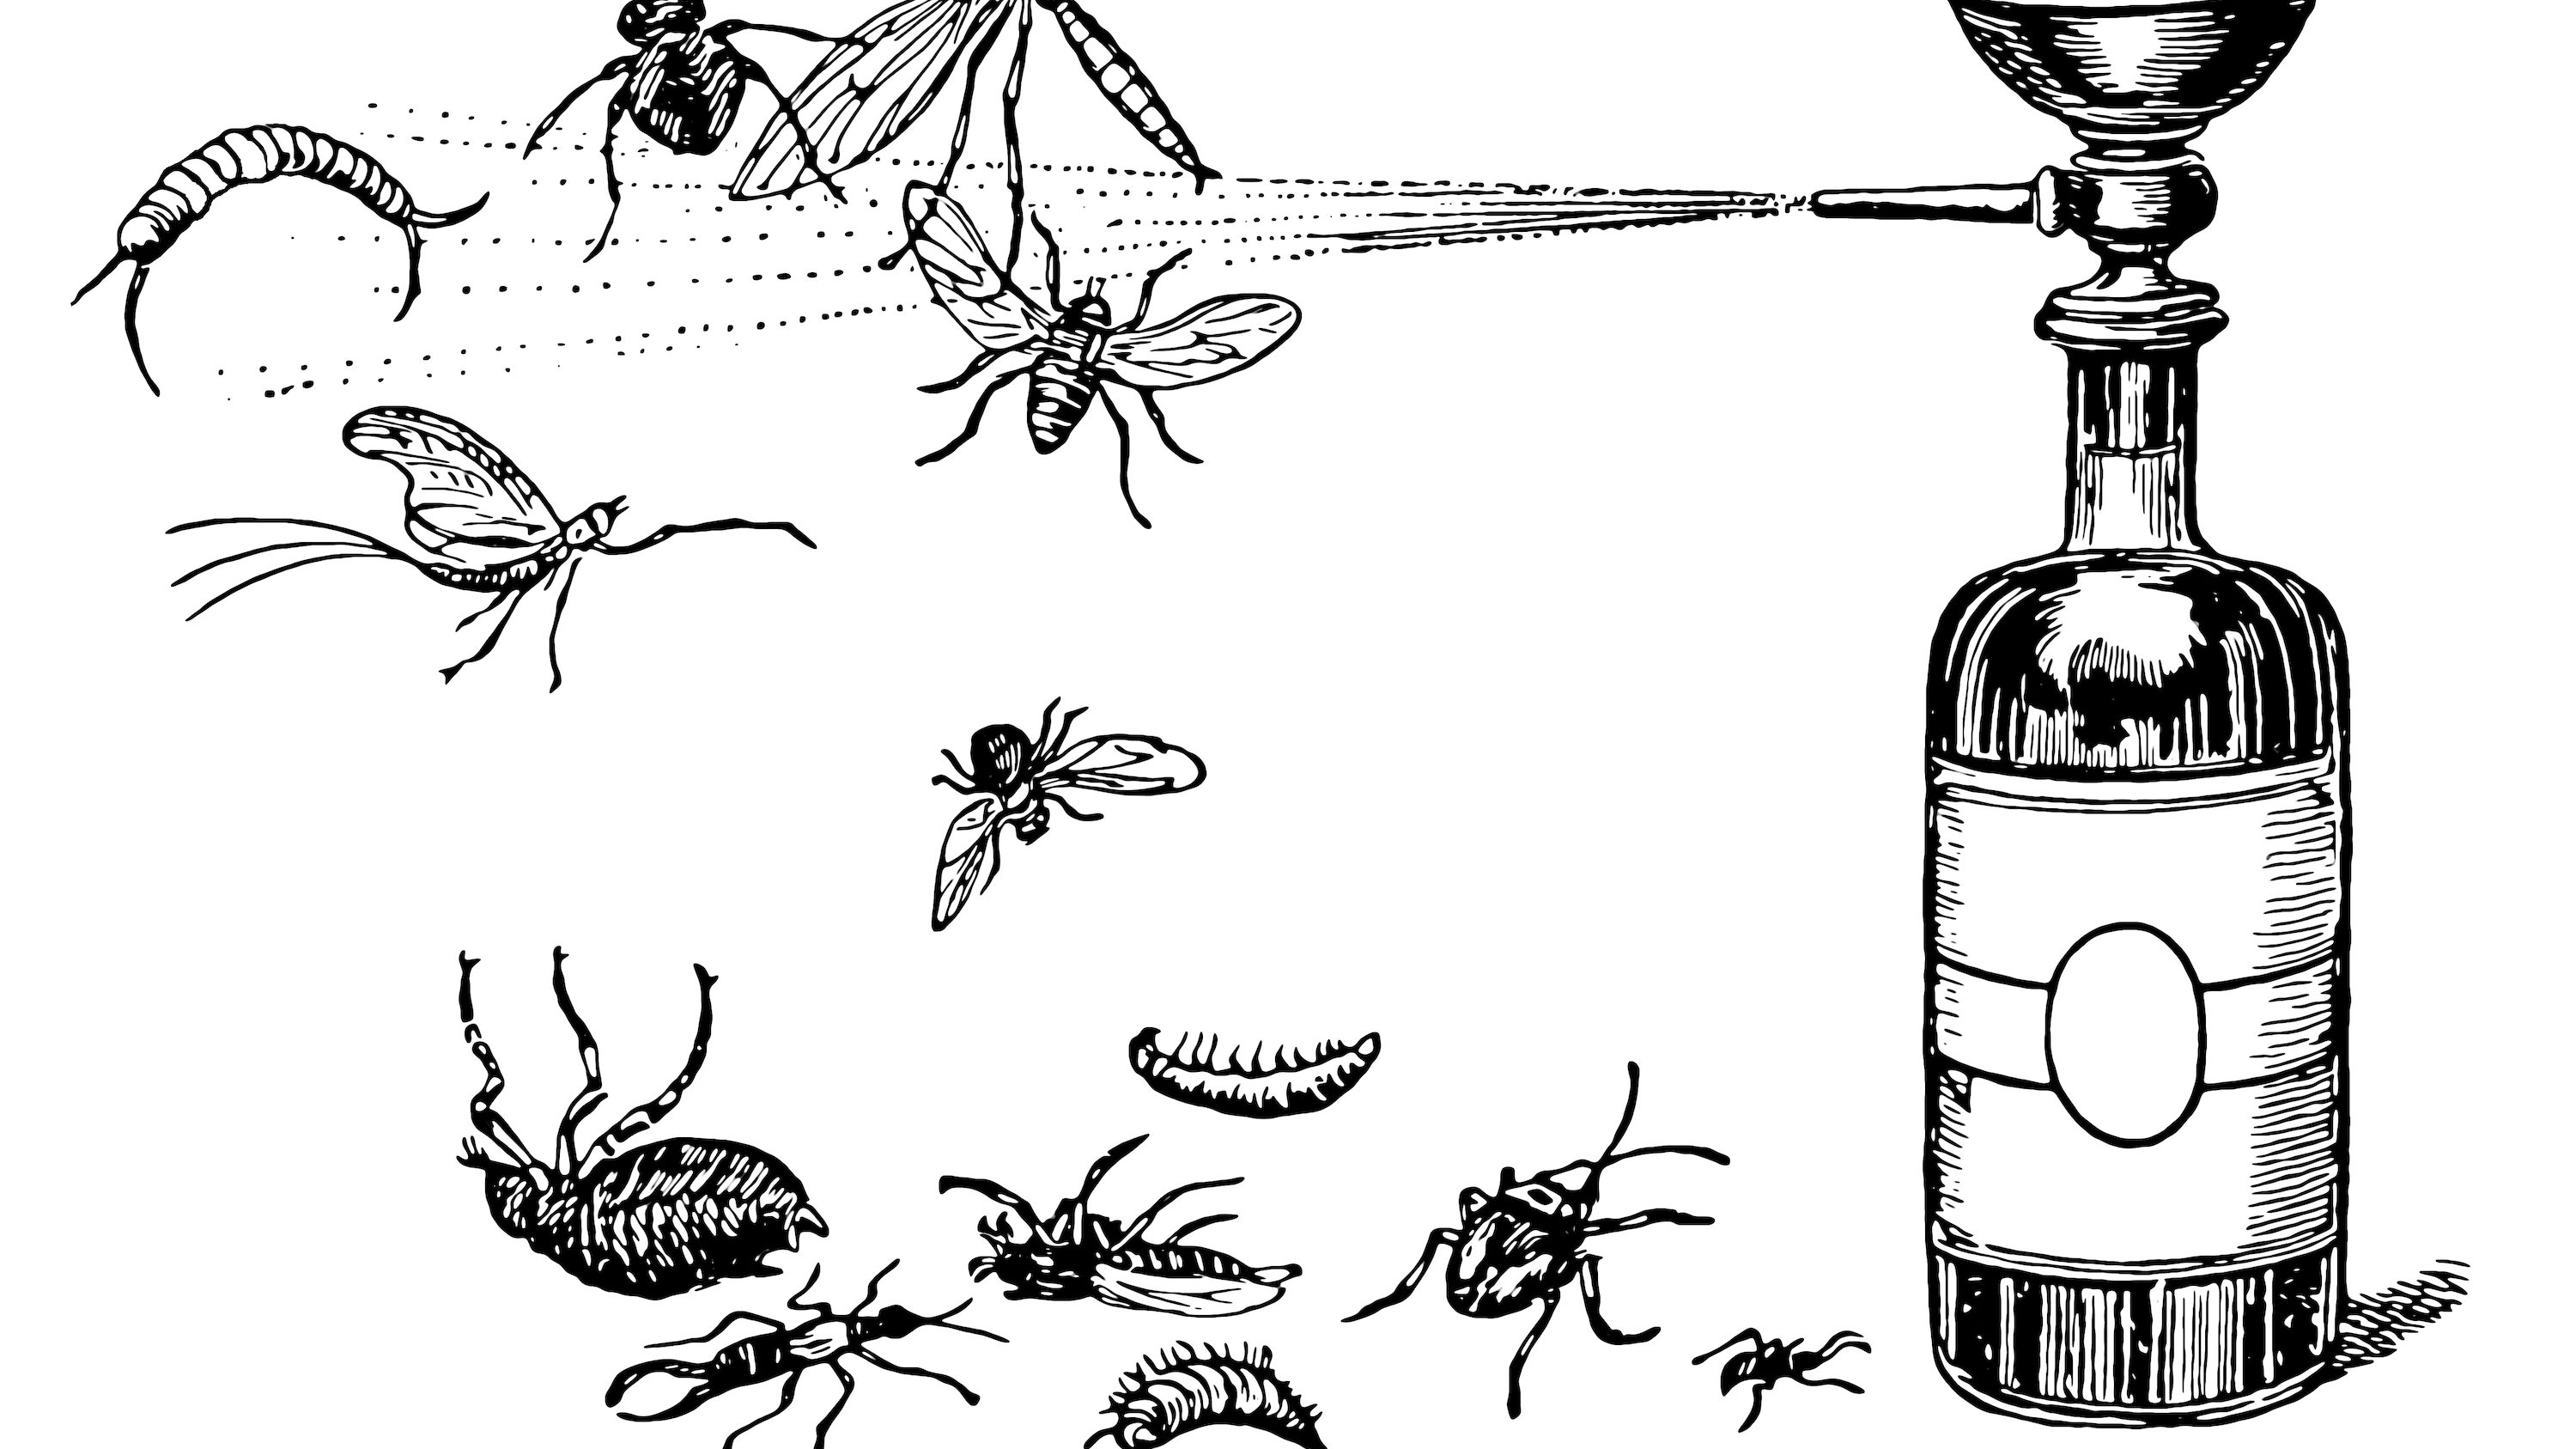 殺虫剤で無惨に殺される昆虫たちの「痛み」を法的に認めるべきだ | 最新研究から判明した証拠